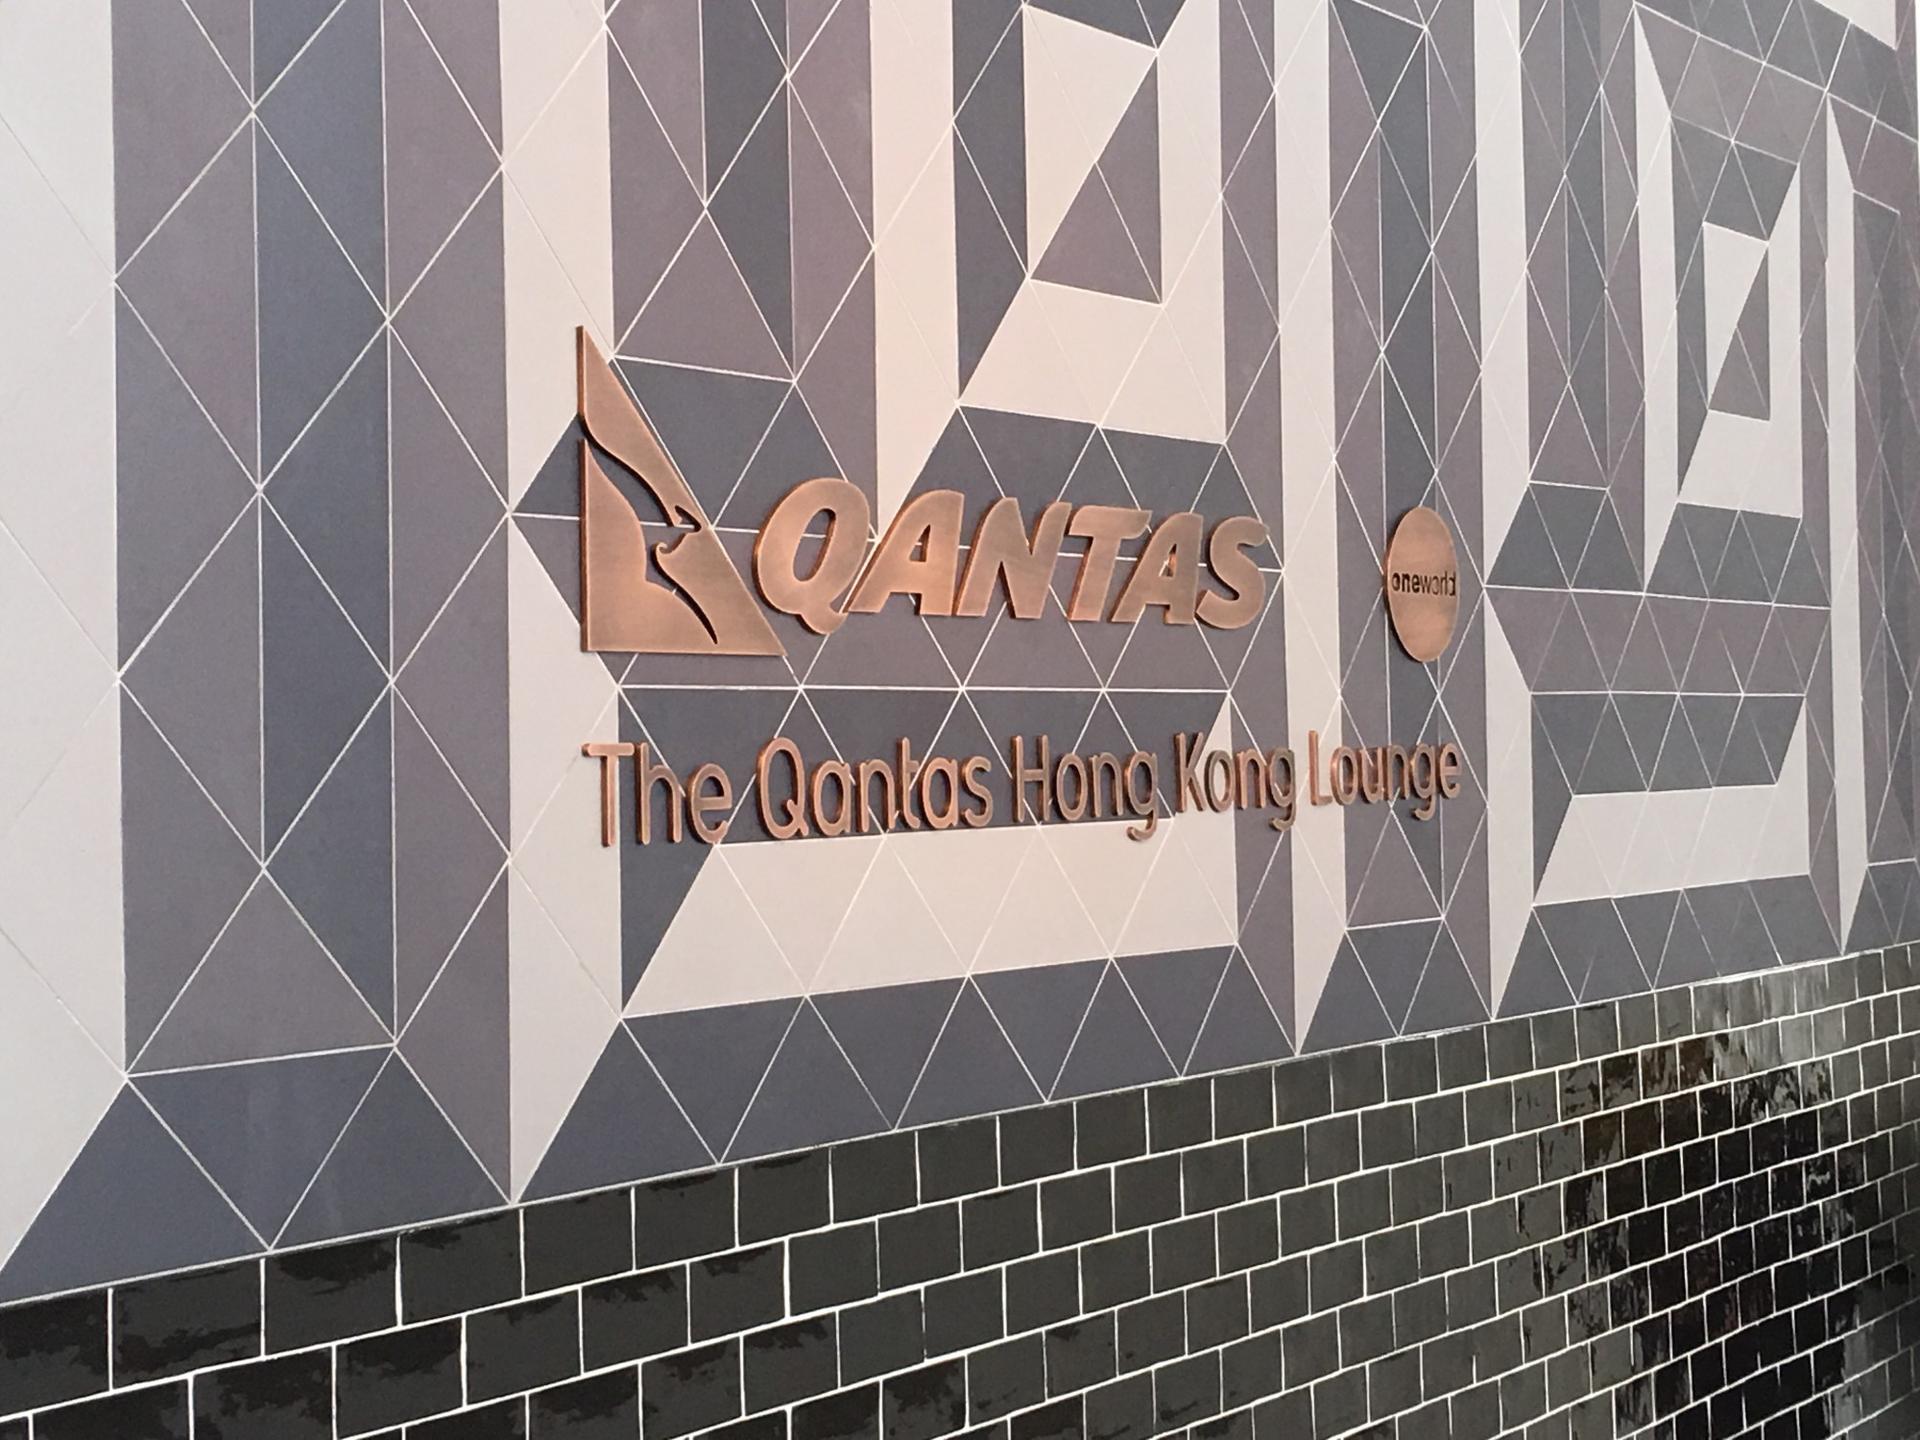 The Qantas Hong Kong Lounge image 71 of 99